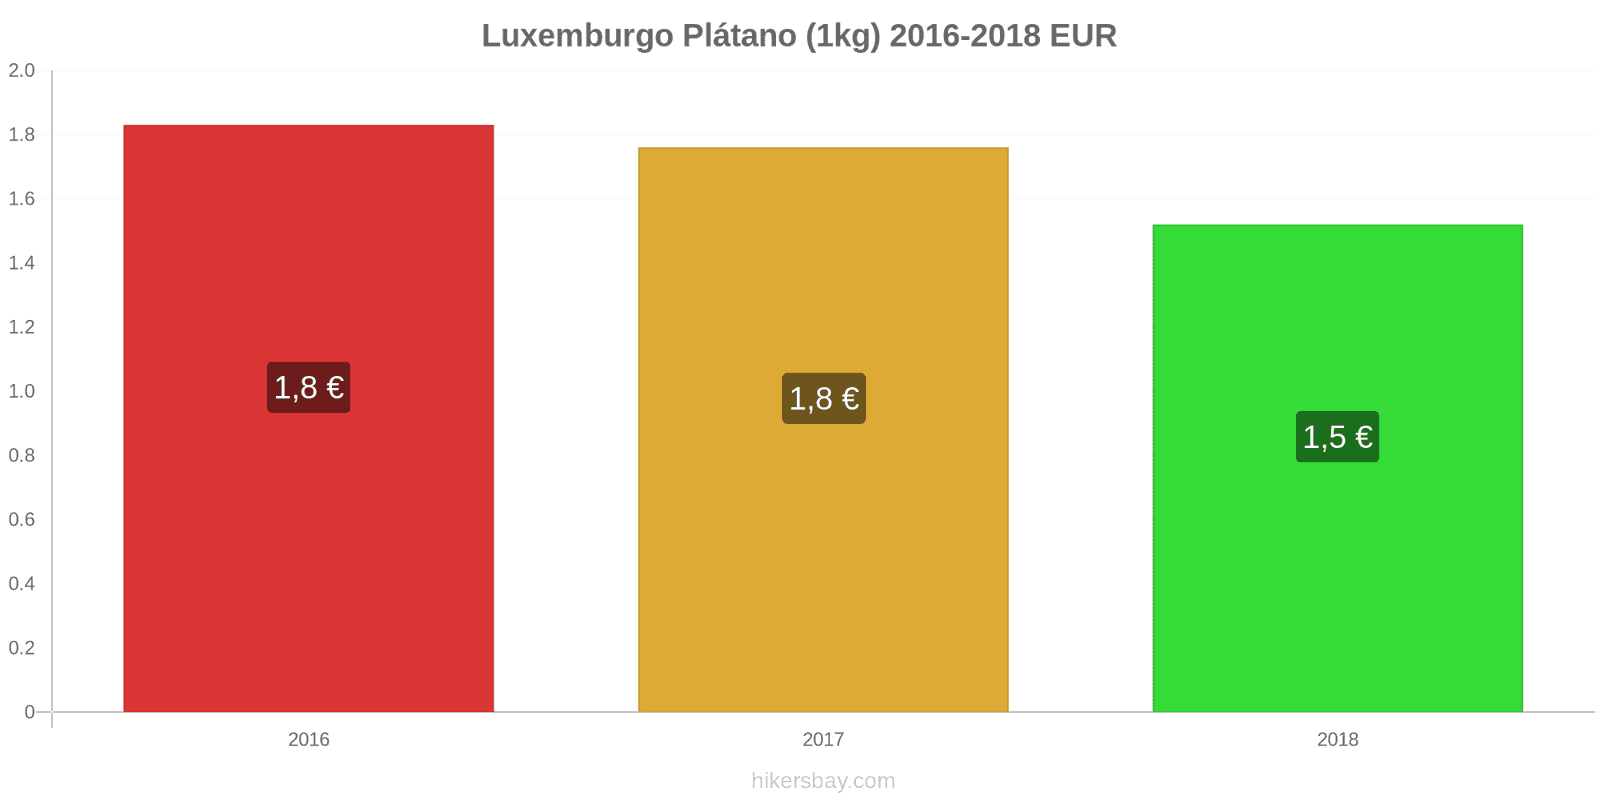 Luxemburgo cambios de precios Plátanos (1kg) hikersbay.com